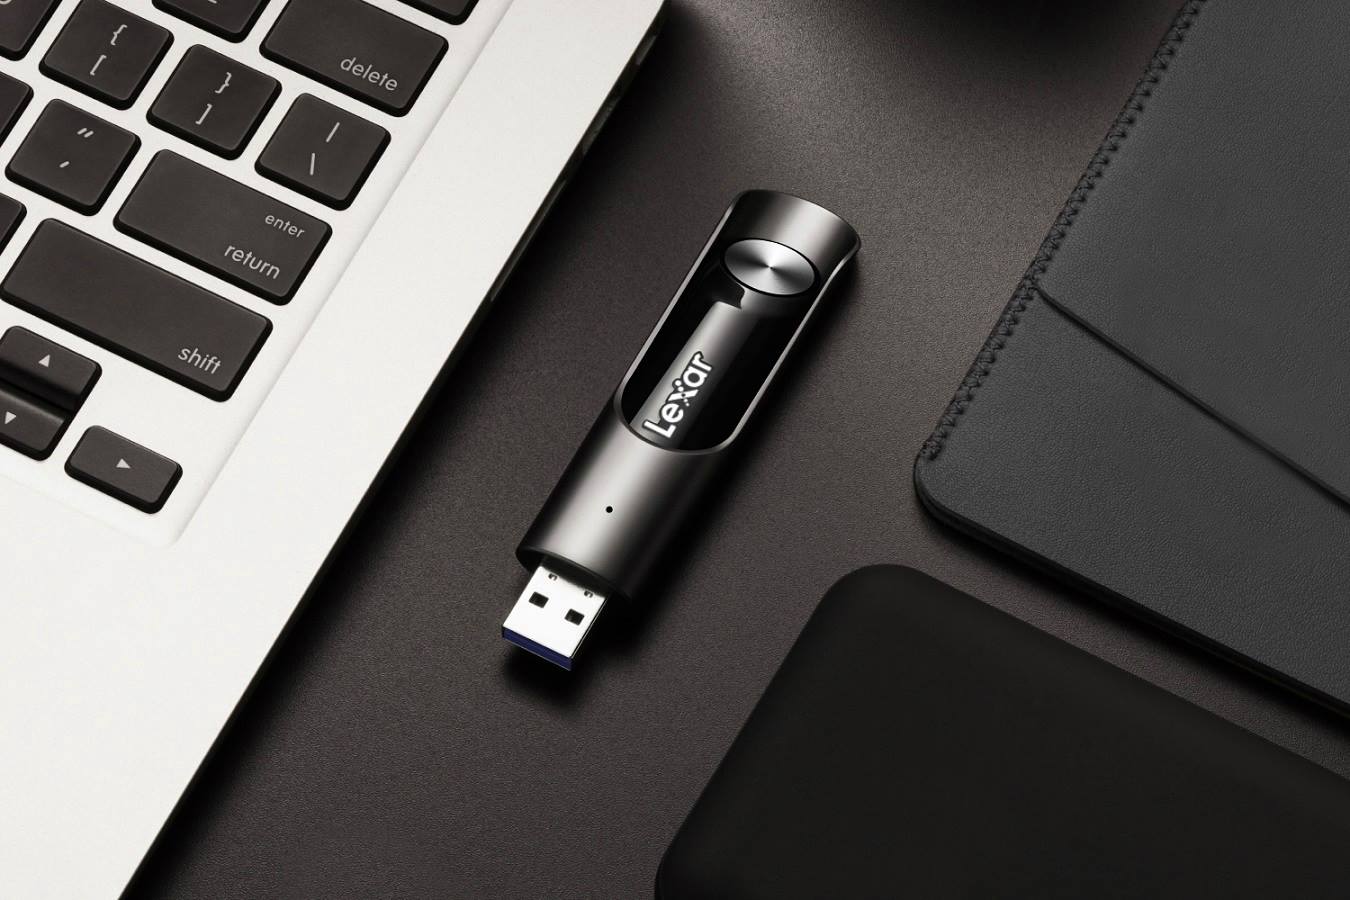 USB tốc độ cao giúp bạn lưu trữ và truyền tải dữ liệu một cách nhanh chóng và hiệu quả. Hãy đón nhận công nghệ mới nhất với USB tốc độ cao và tiện lợi mọi lúc mọi nơi!